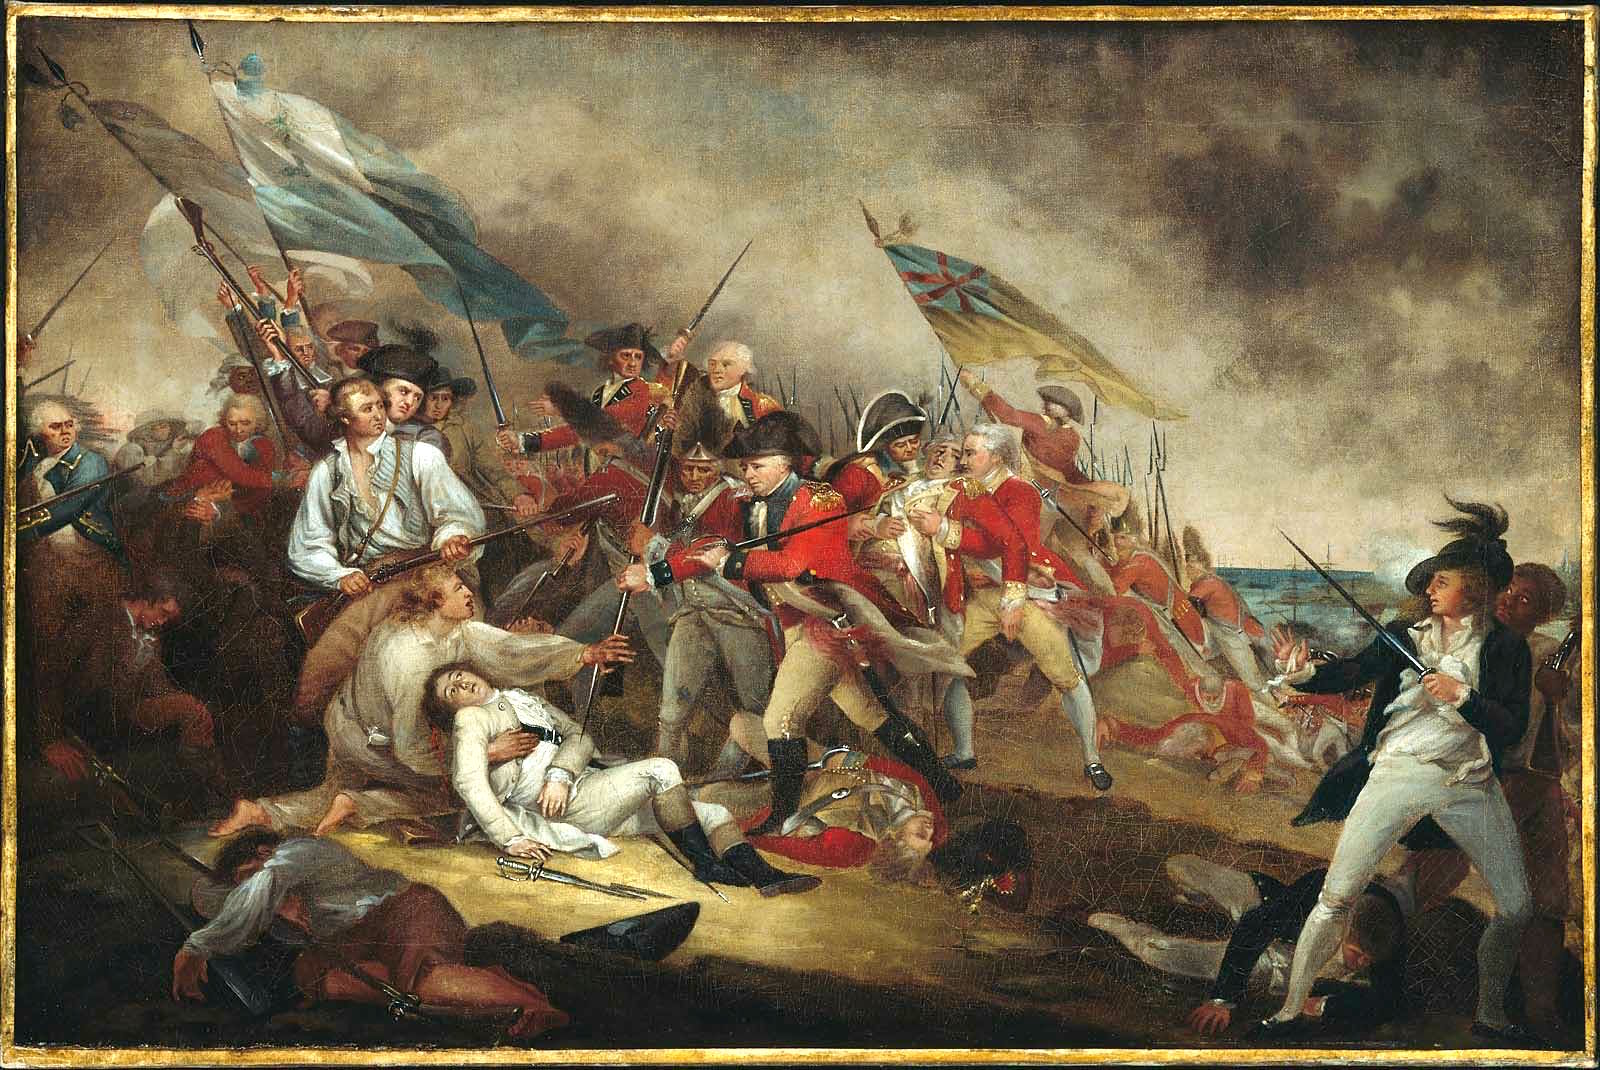 Battle of Bunker Hill - Wikipedia